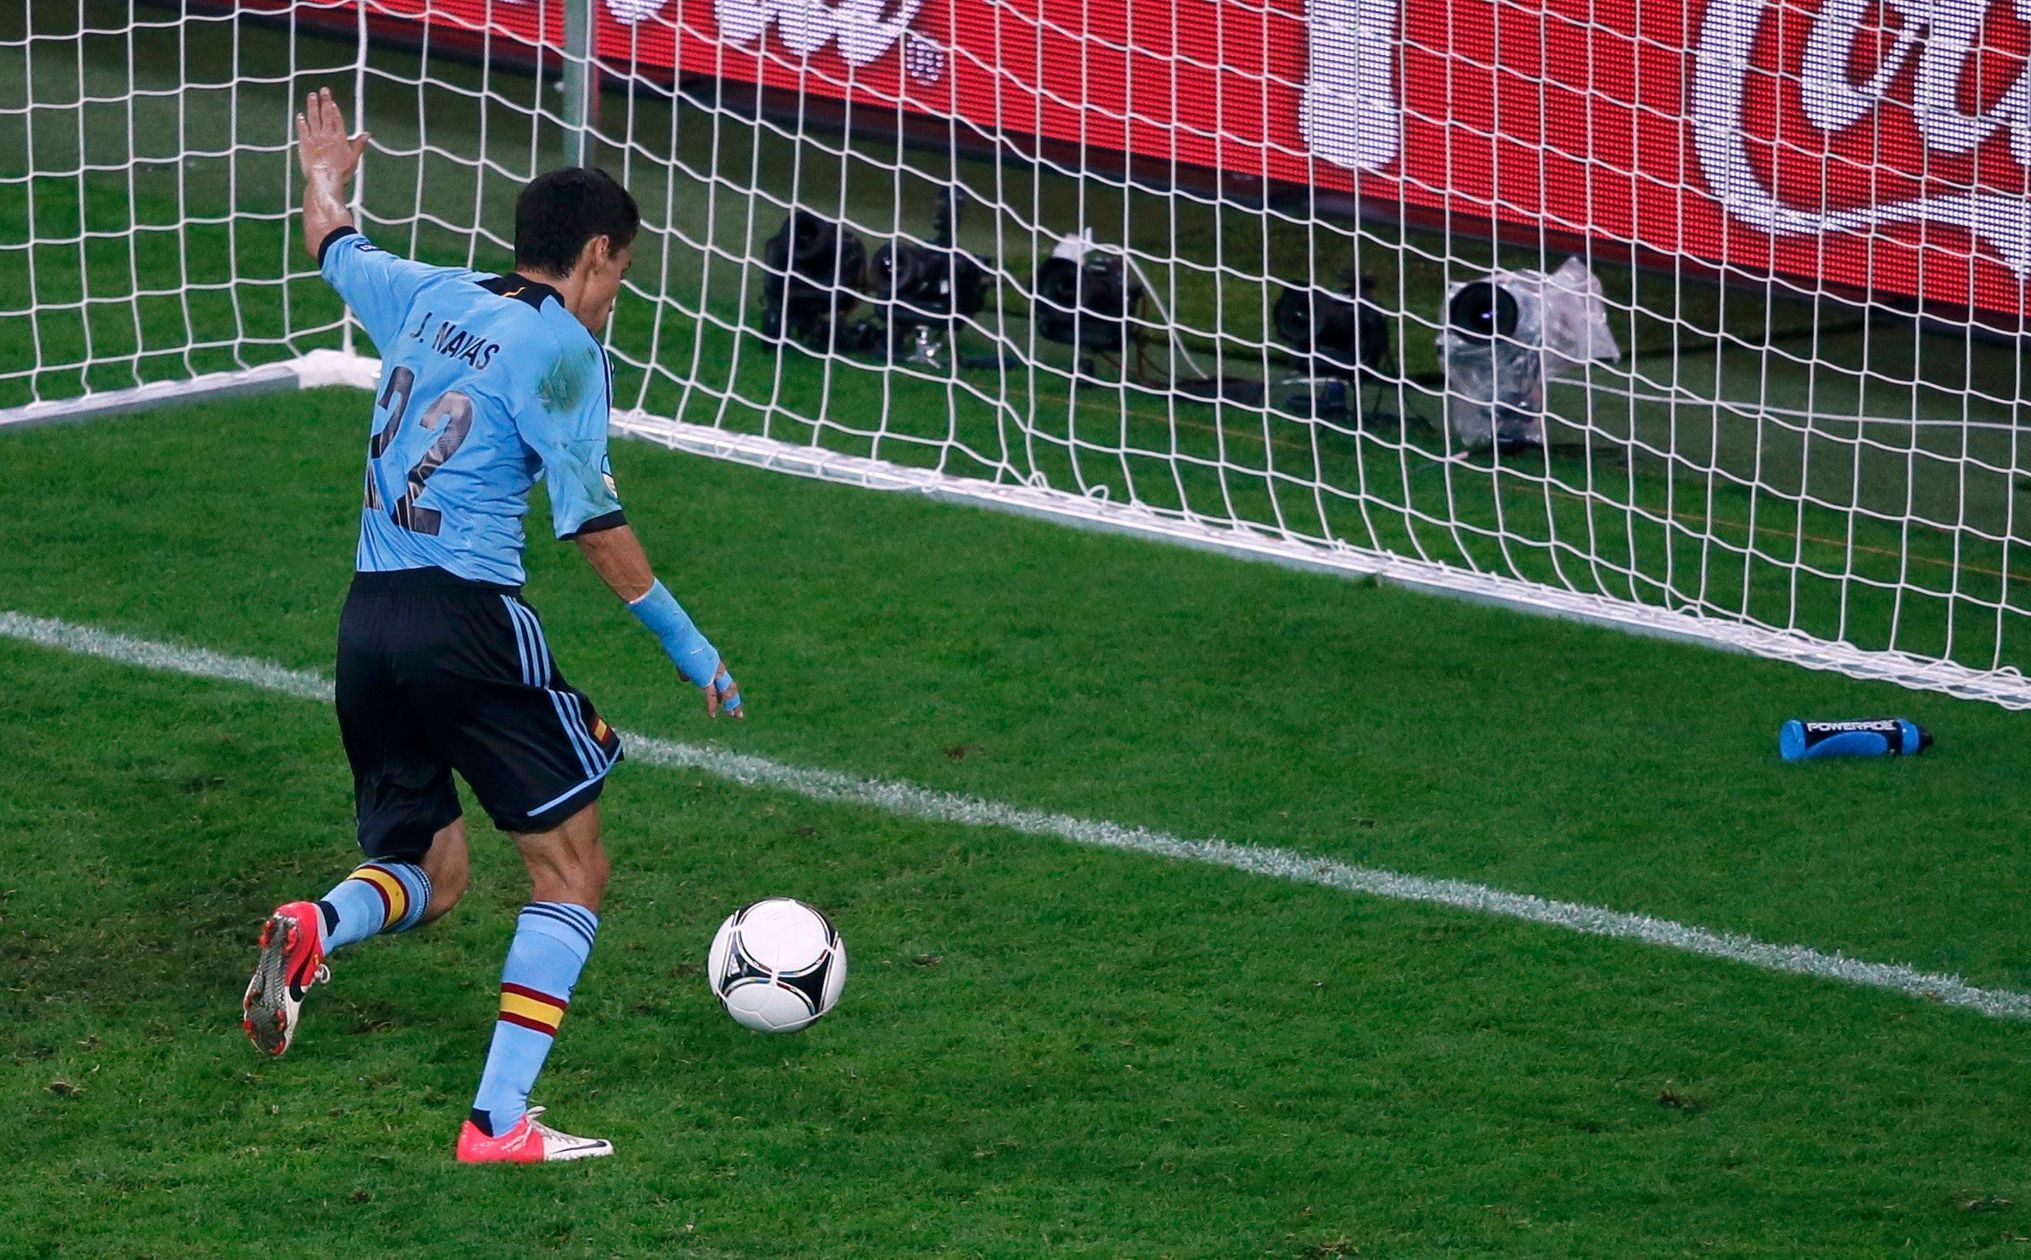 Euro 2012: Jesus Navas skóruje v zápase Španělsko - Chorvatsko